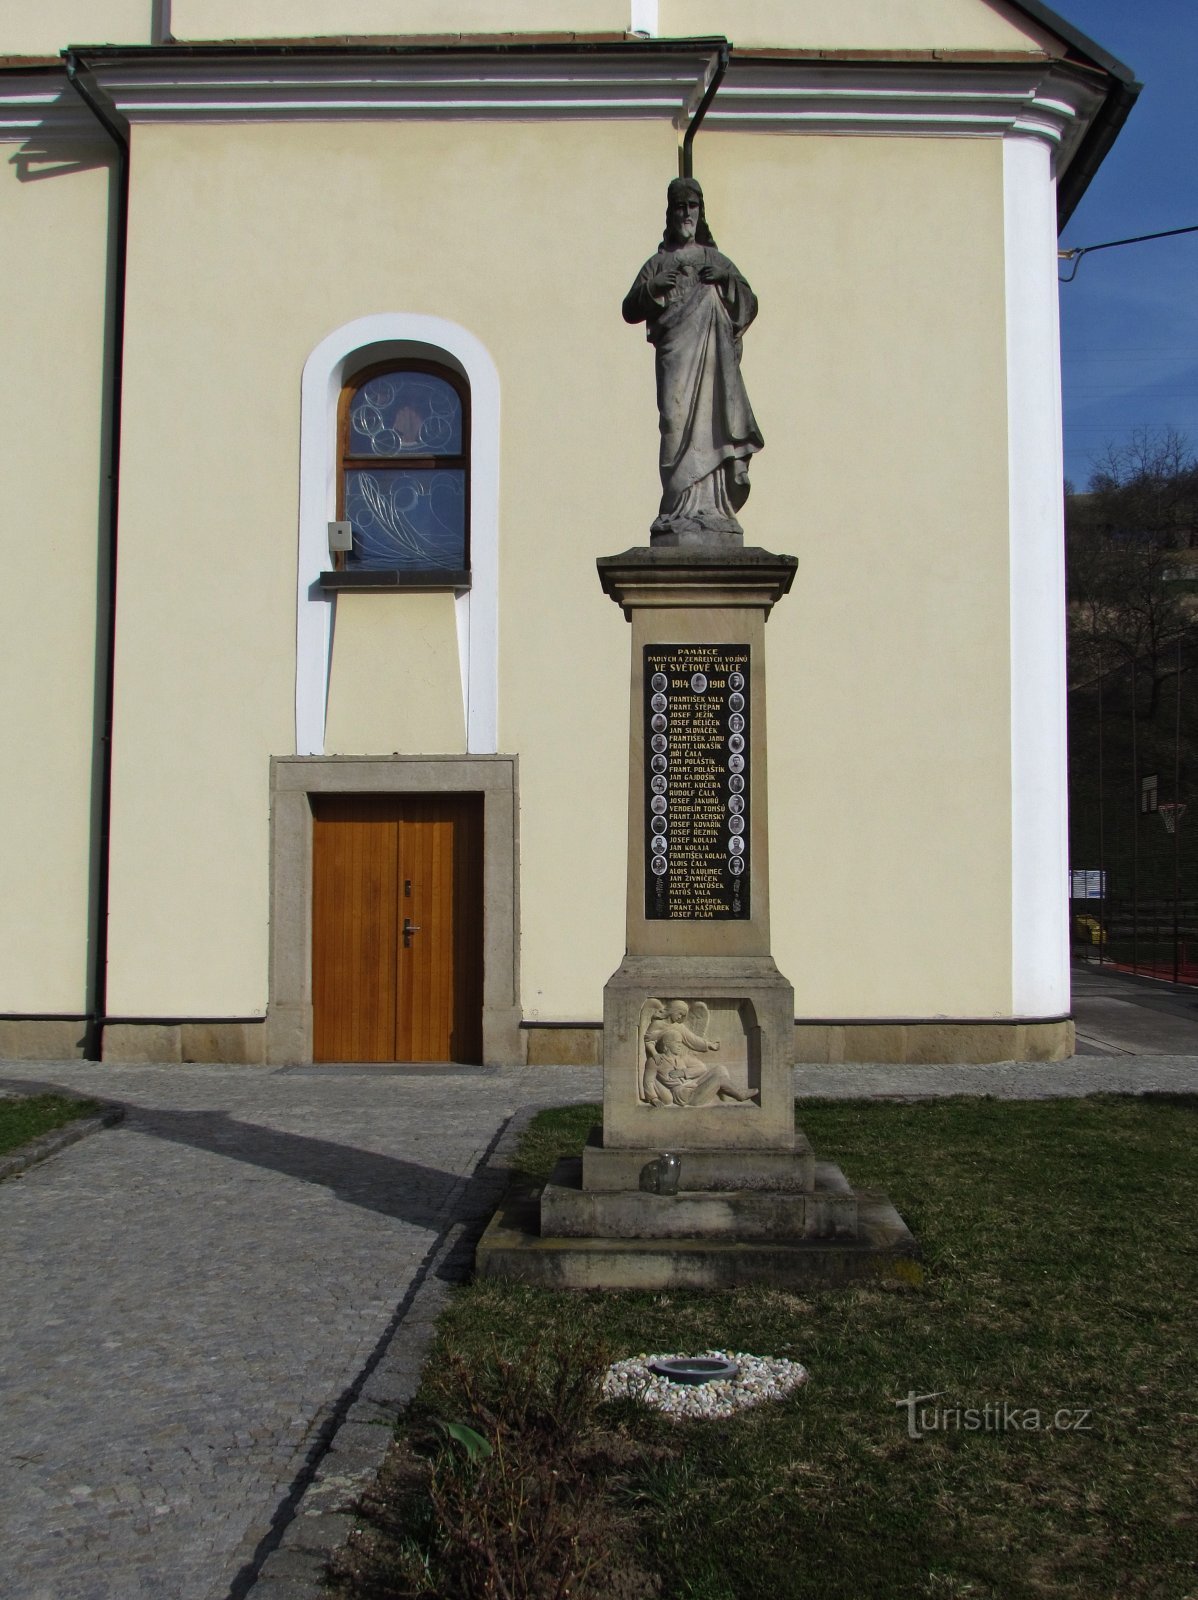 Христос и памятник погибшим в Первой мировой войне